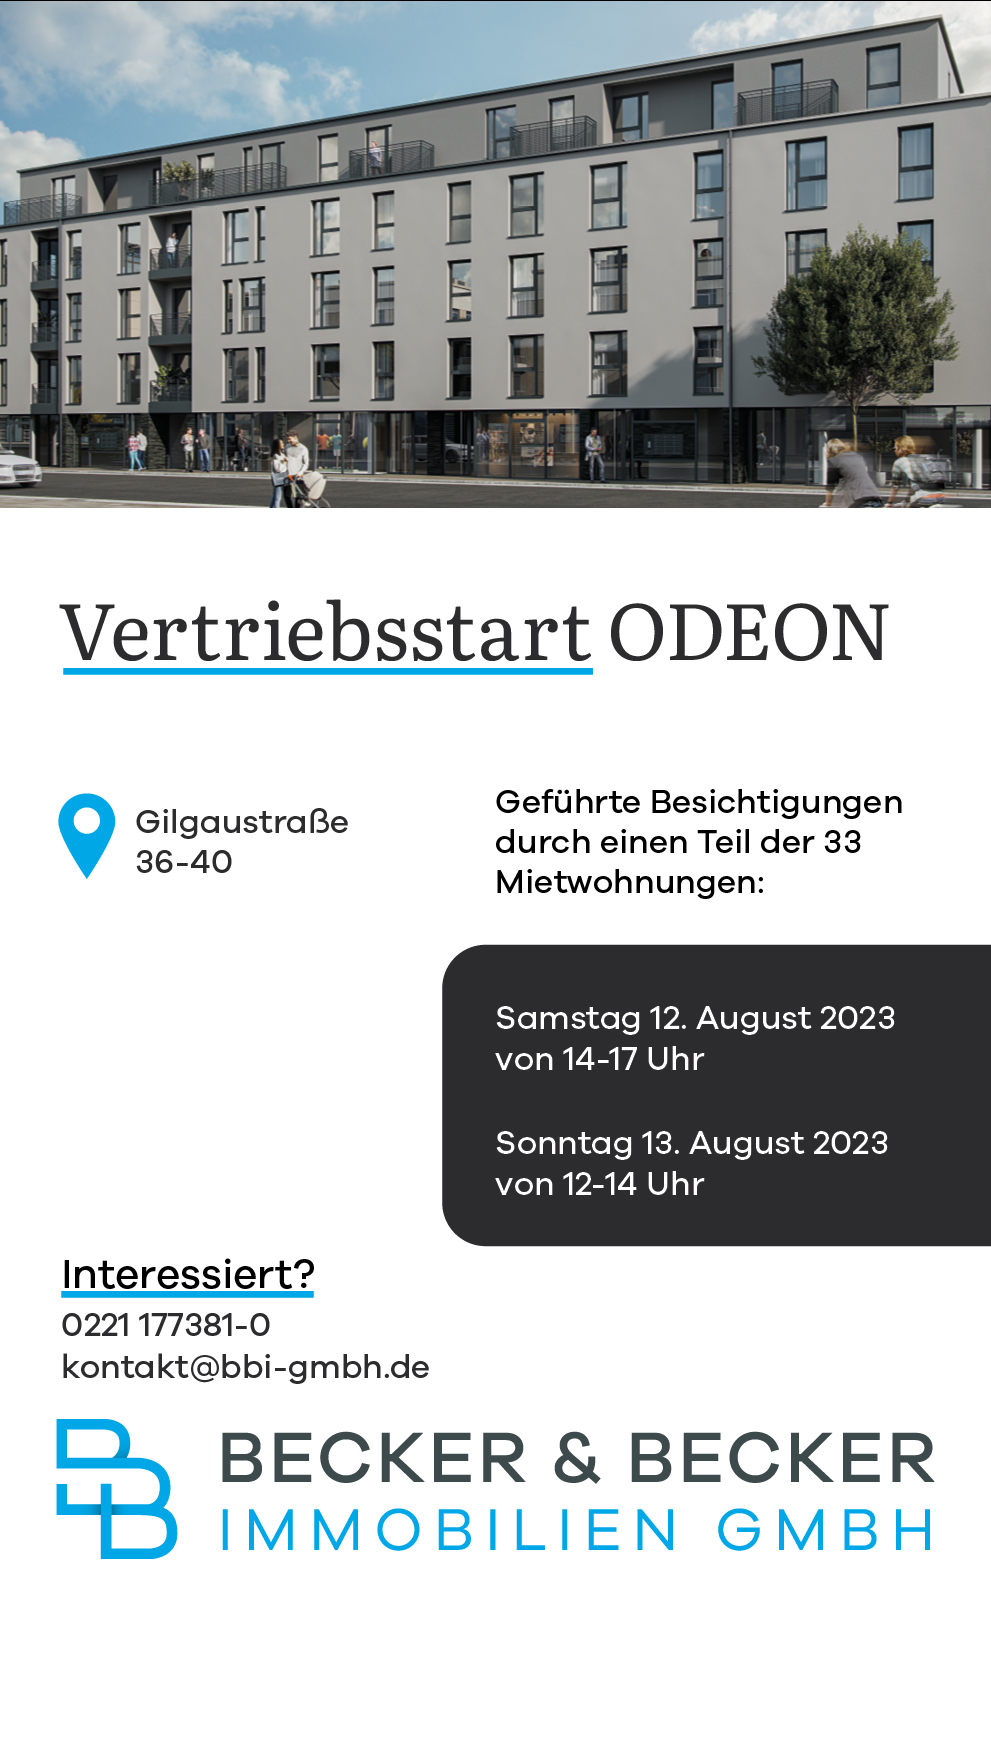 Vertriebsstart-ODEON.jpg - ©BECKER & BECKER Immobilien GmbH